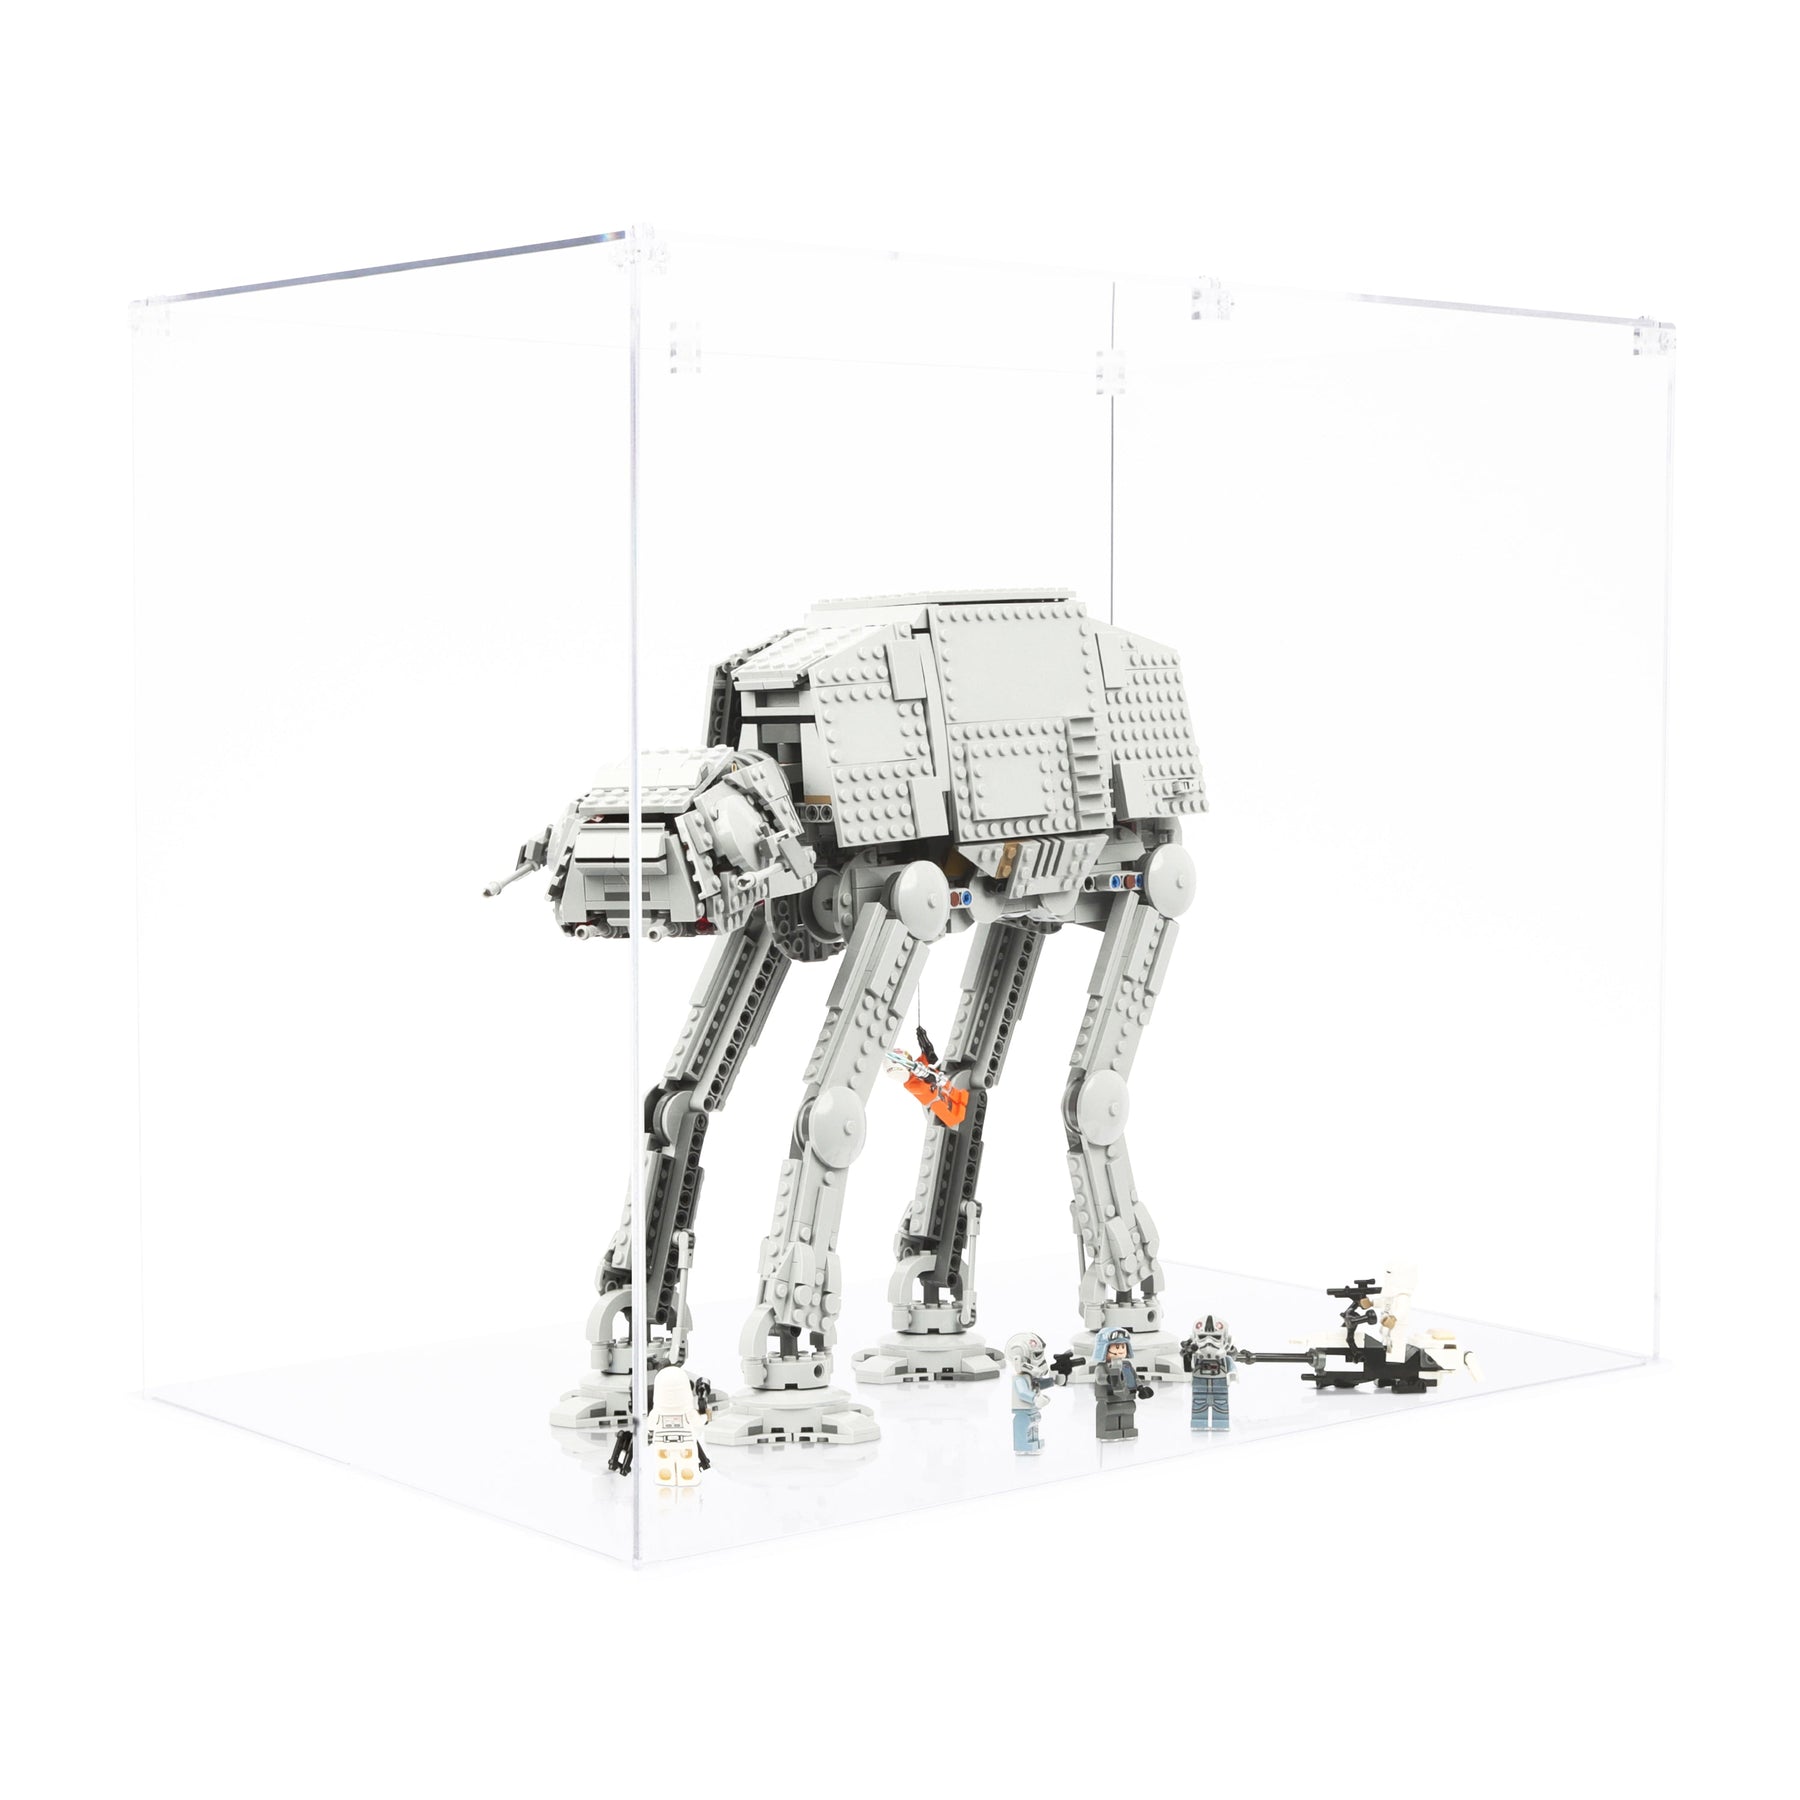 Lego Star Wars 75288 AT-AT - Display Case